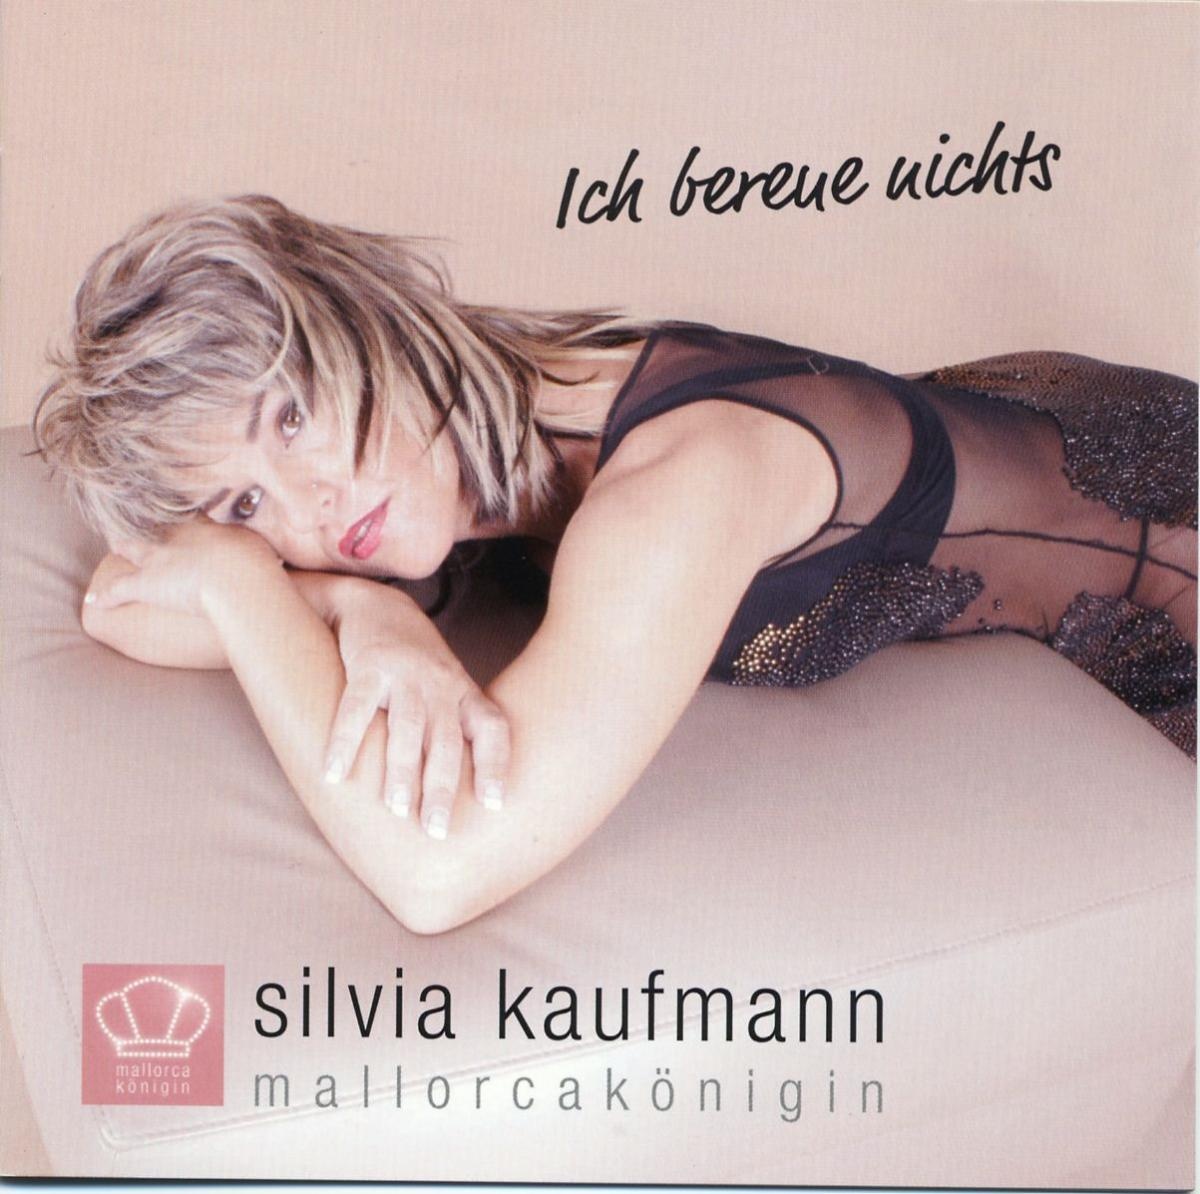 Ich bereue nichts - Silvia Kaufmann. (CD)